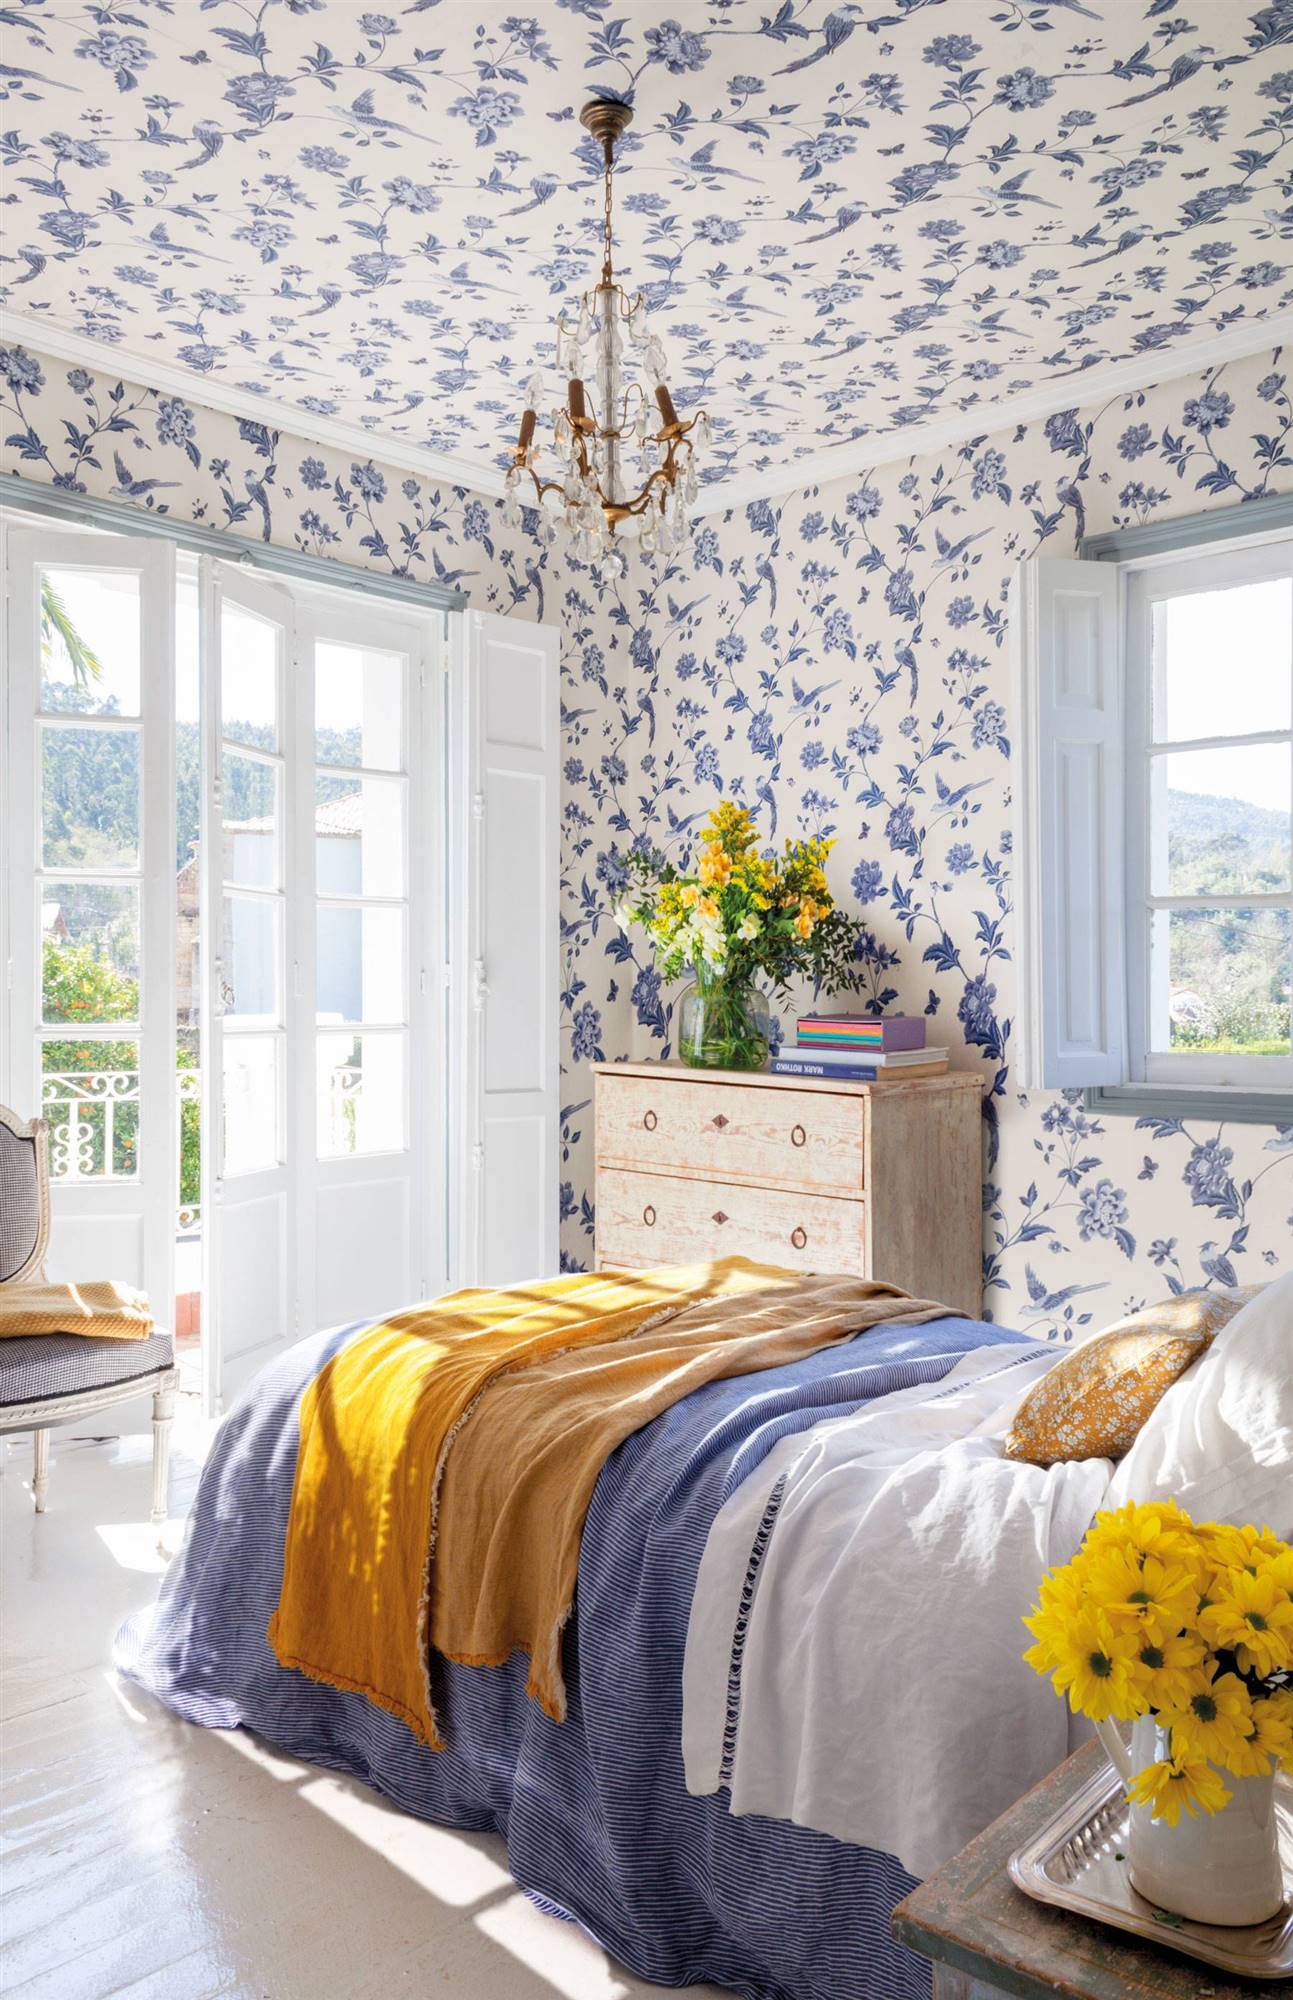 Dormitorio con papel pintado de flores azules incluso en el techo